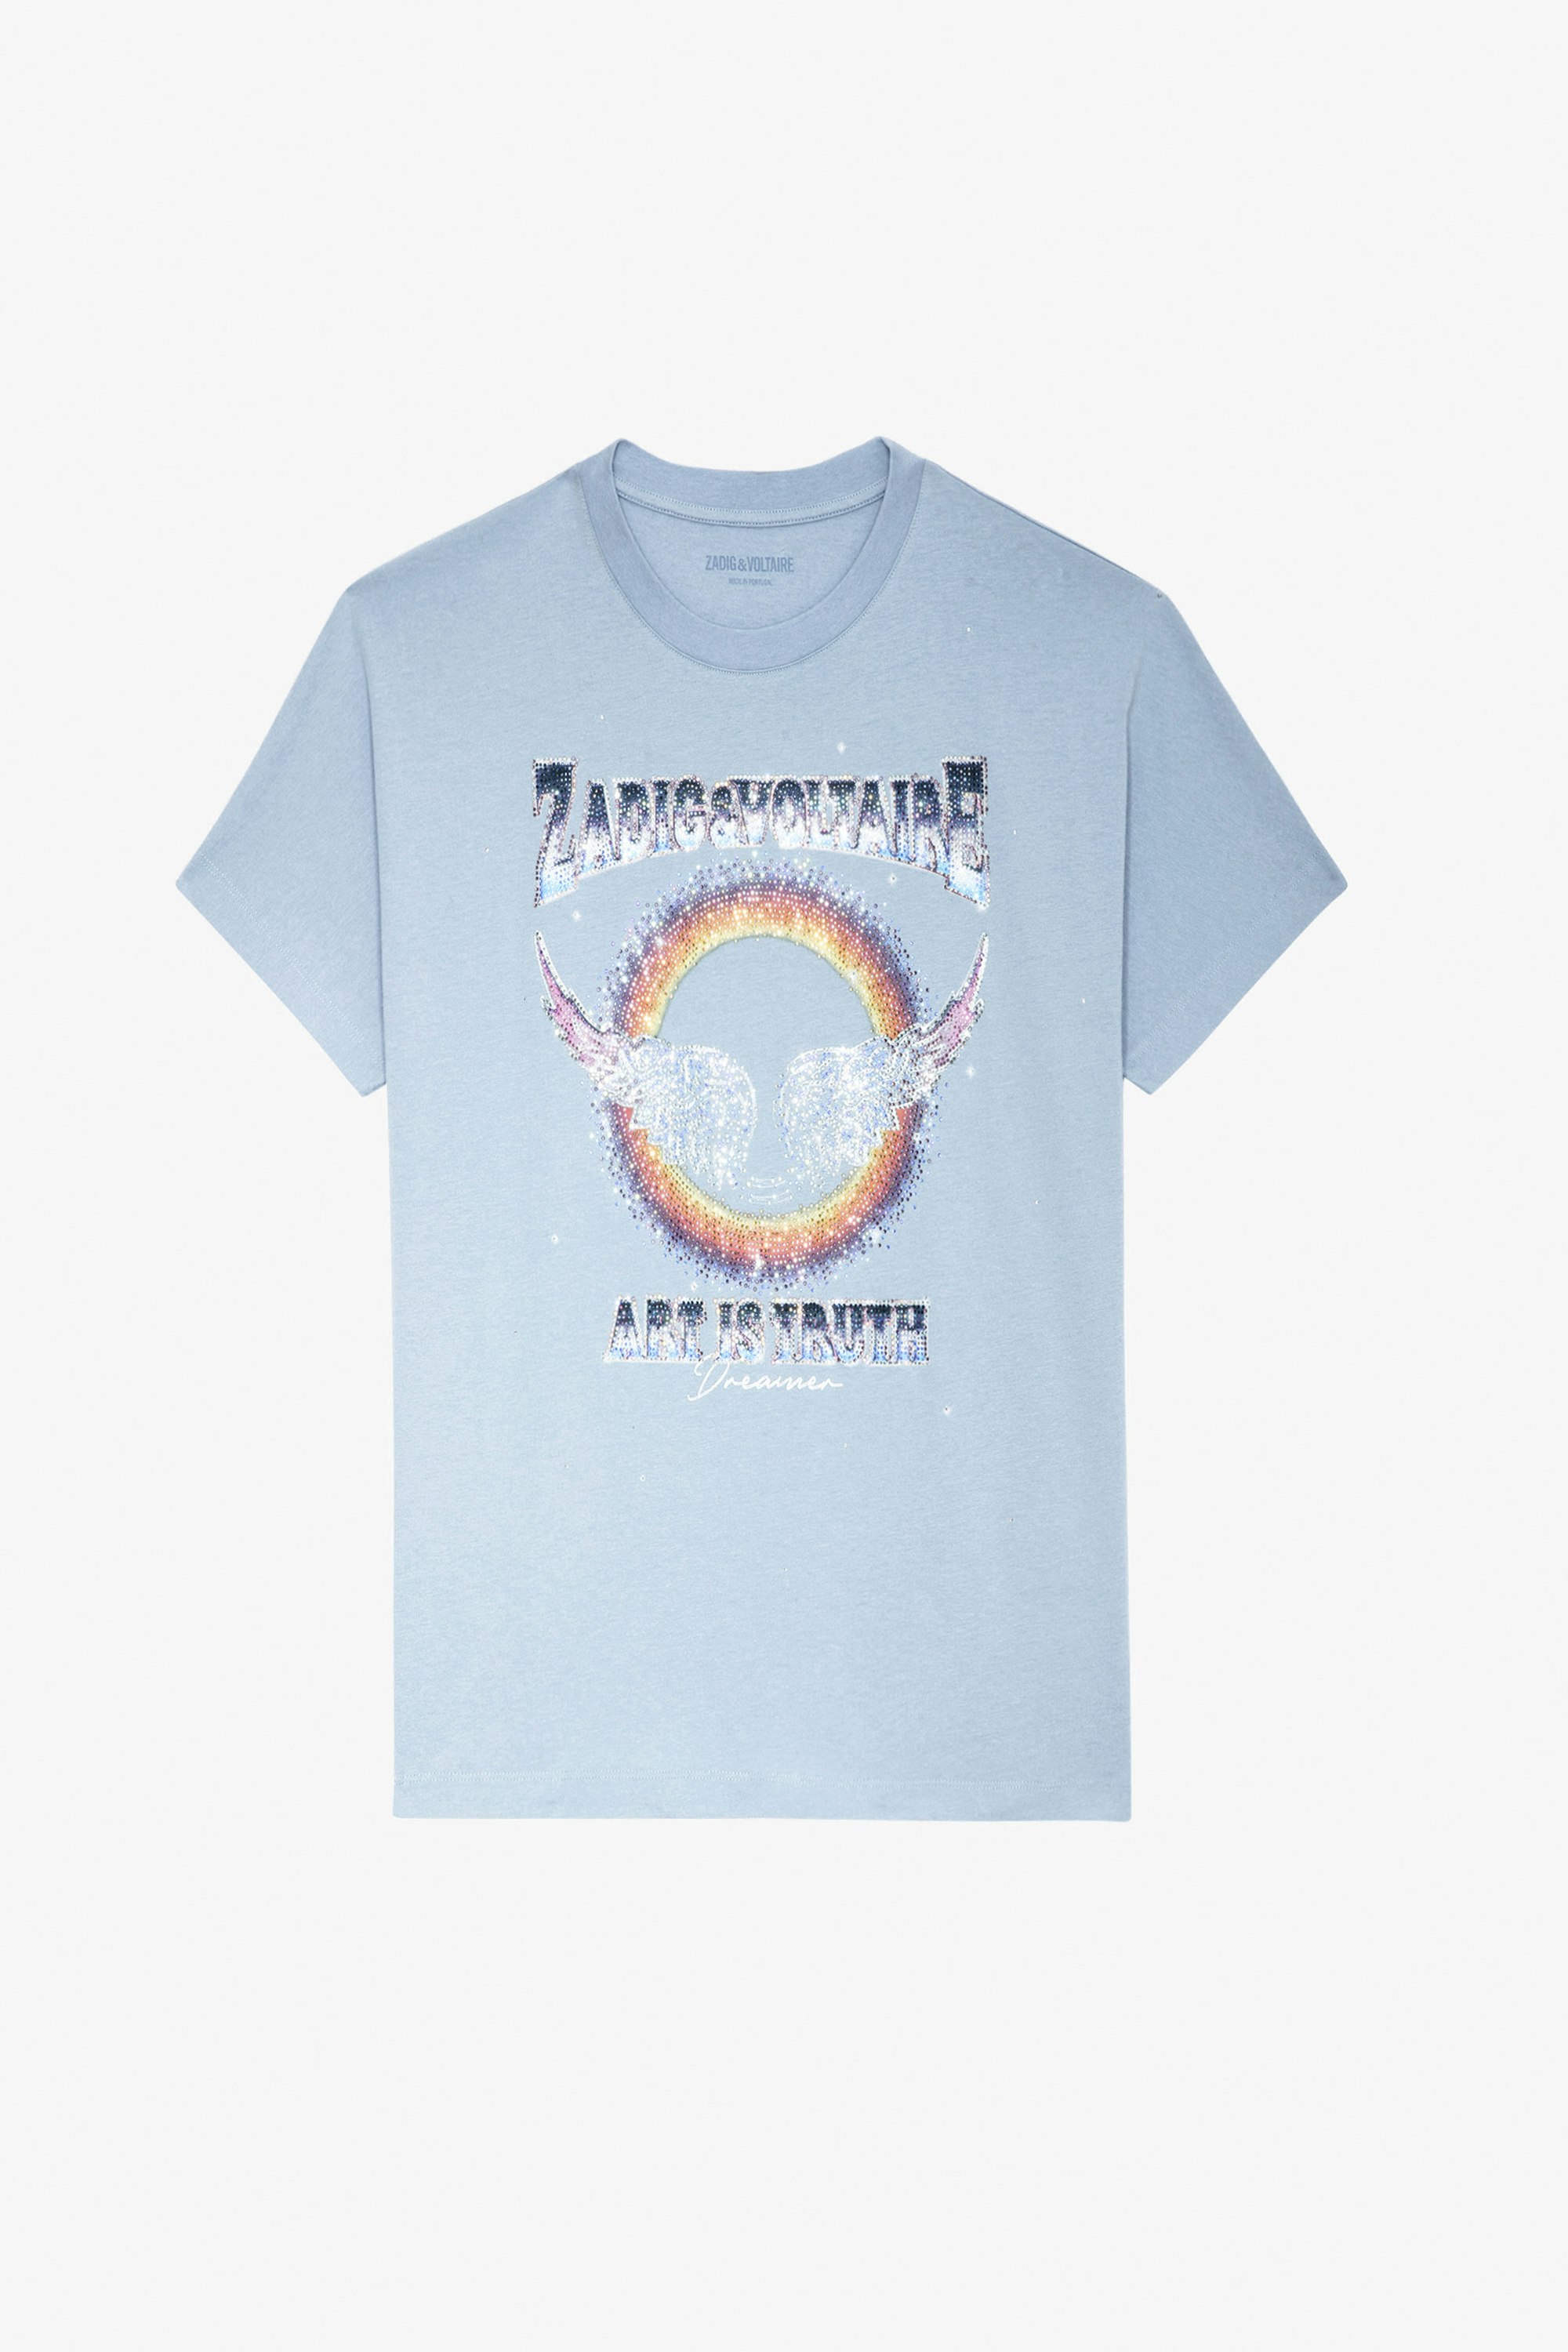 Tommer Diamanté T-shirt - Women’s blue cotton T-shirt with concert motif and diamanté.